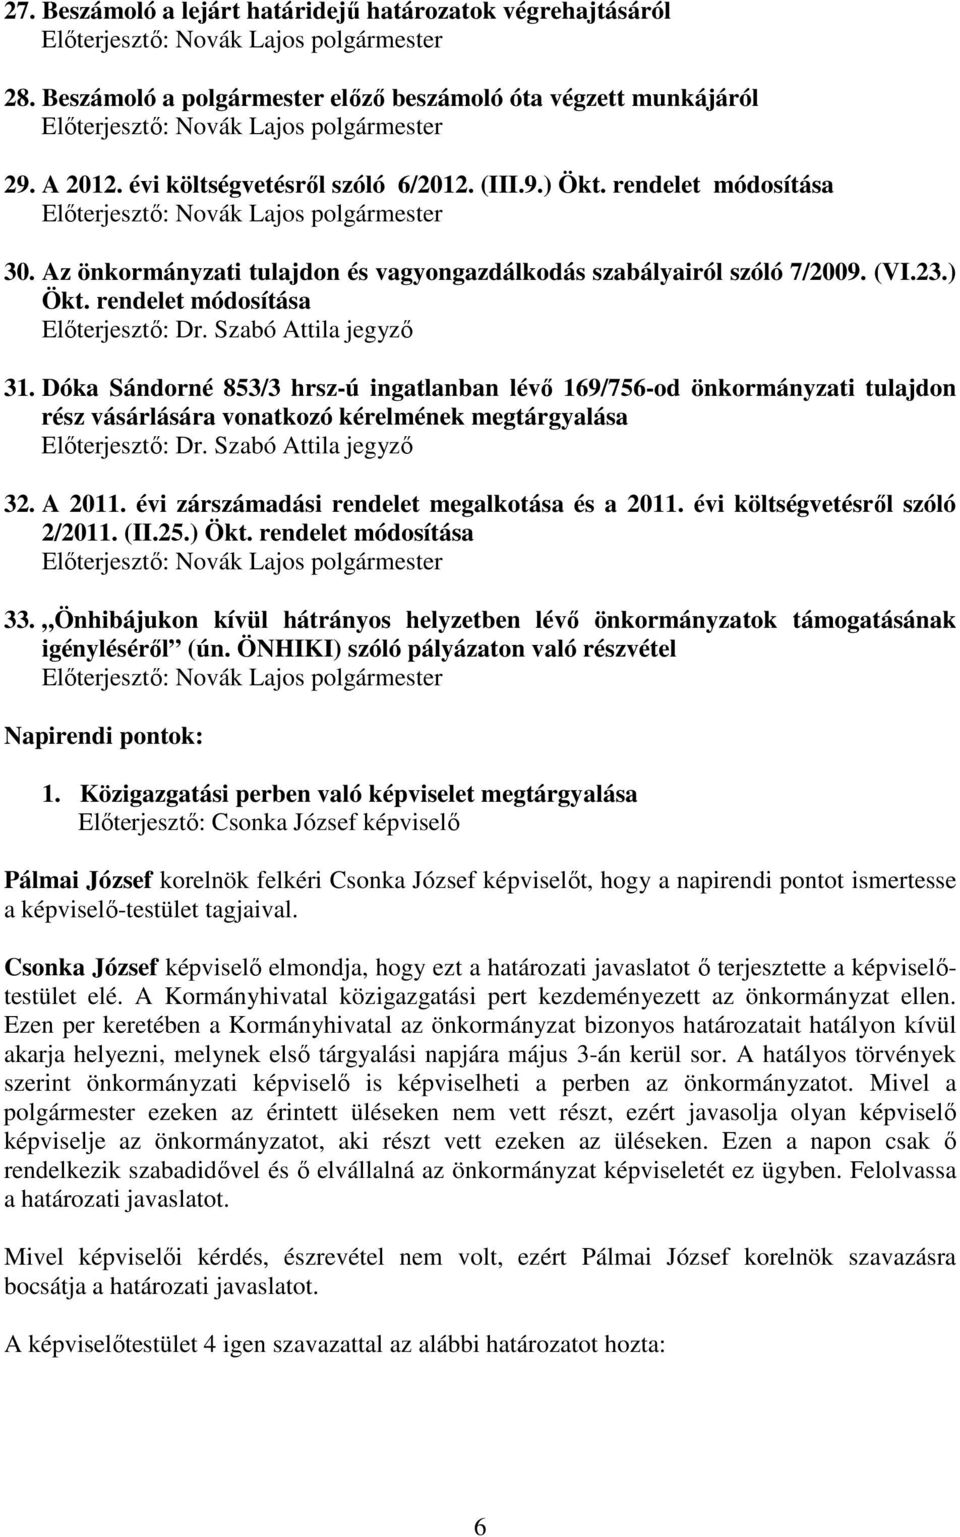 rendelet módosítása Elıterjesztı: Novák Lajos polgármester 30. Az önkormányzati tulajdon és vagyongazdálkodás szabályairól szóló 7/2009. (VI.23.) Ökt. rendelet módosítása Elıterjesztı: Dr.